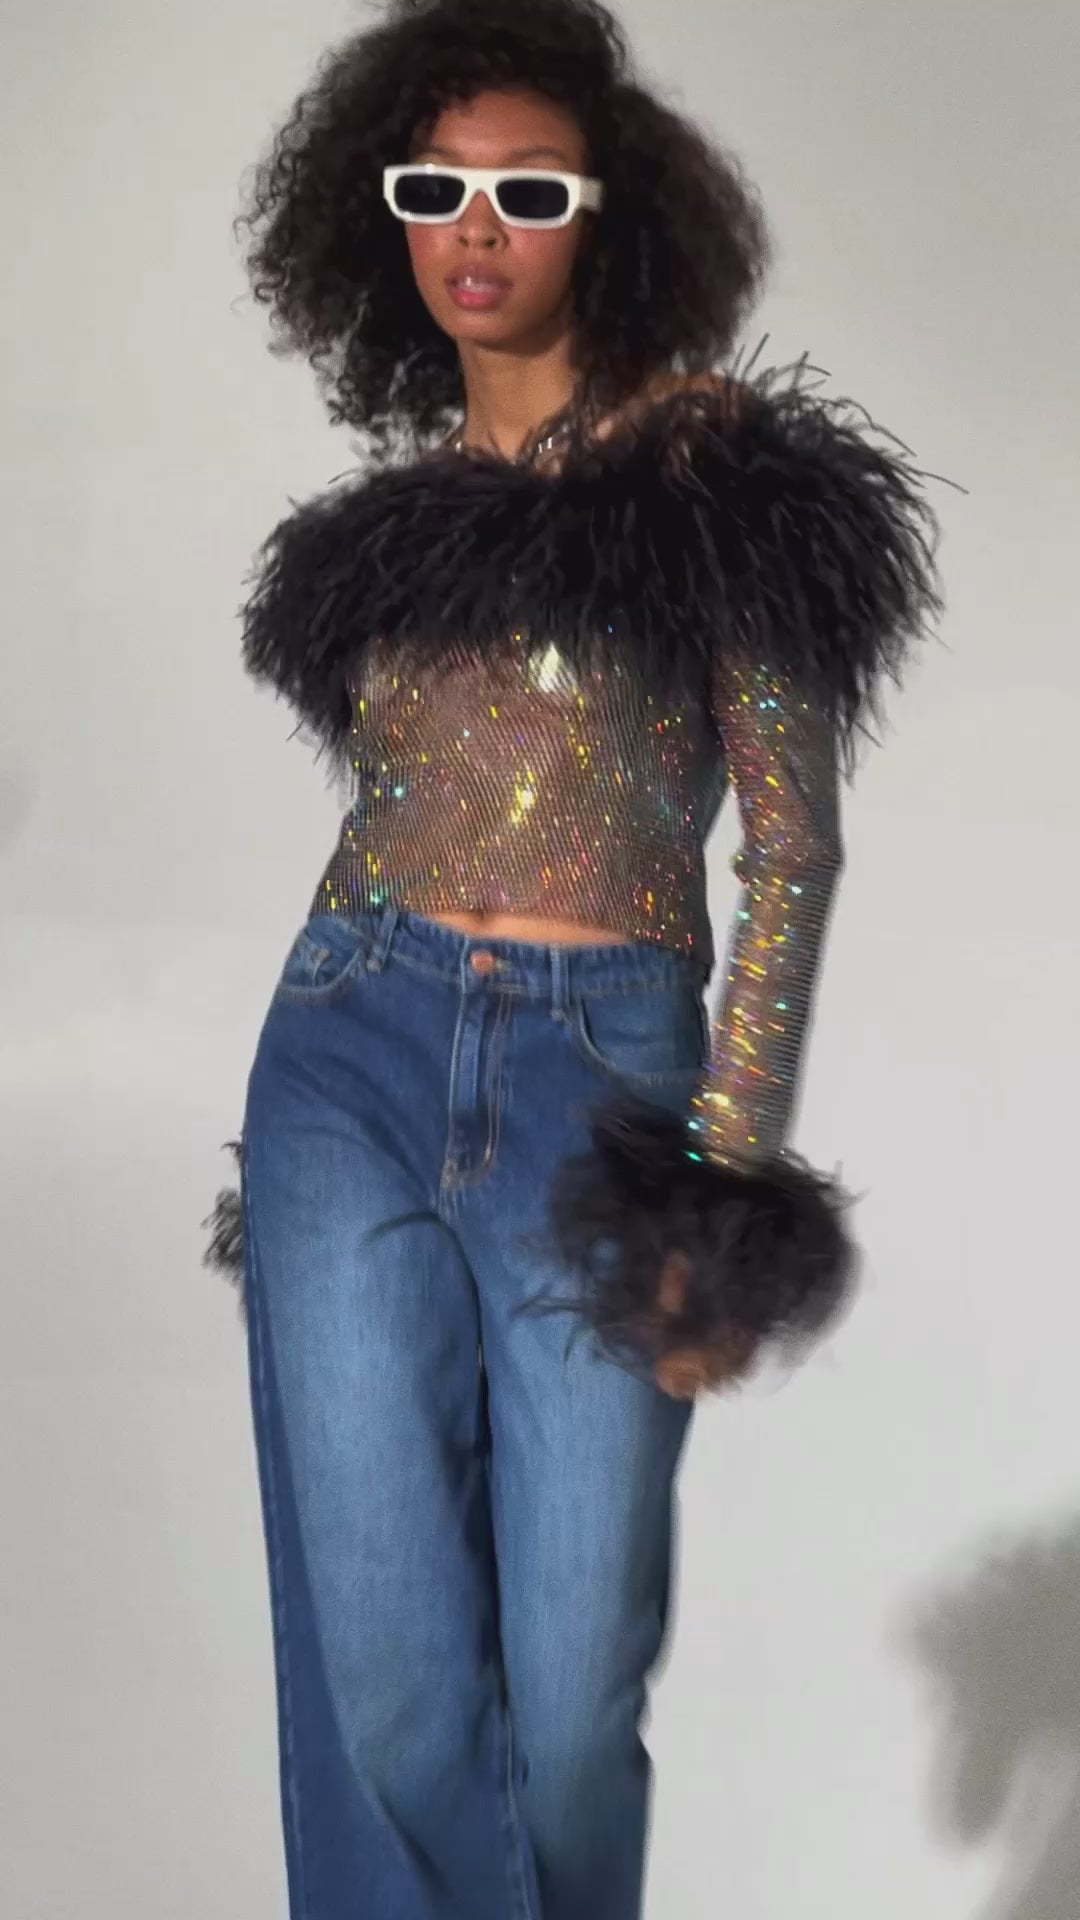 SANTA Sparkle Feathers Open Shoulders Top - Black video